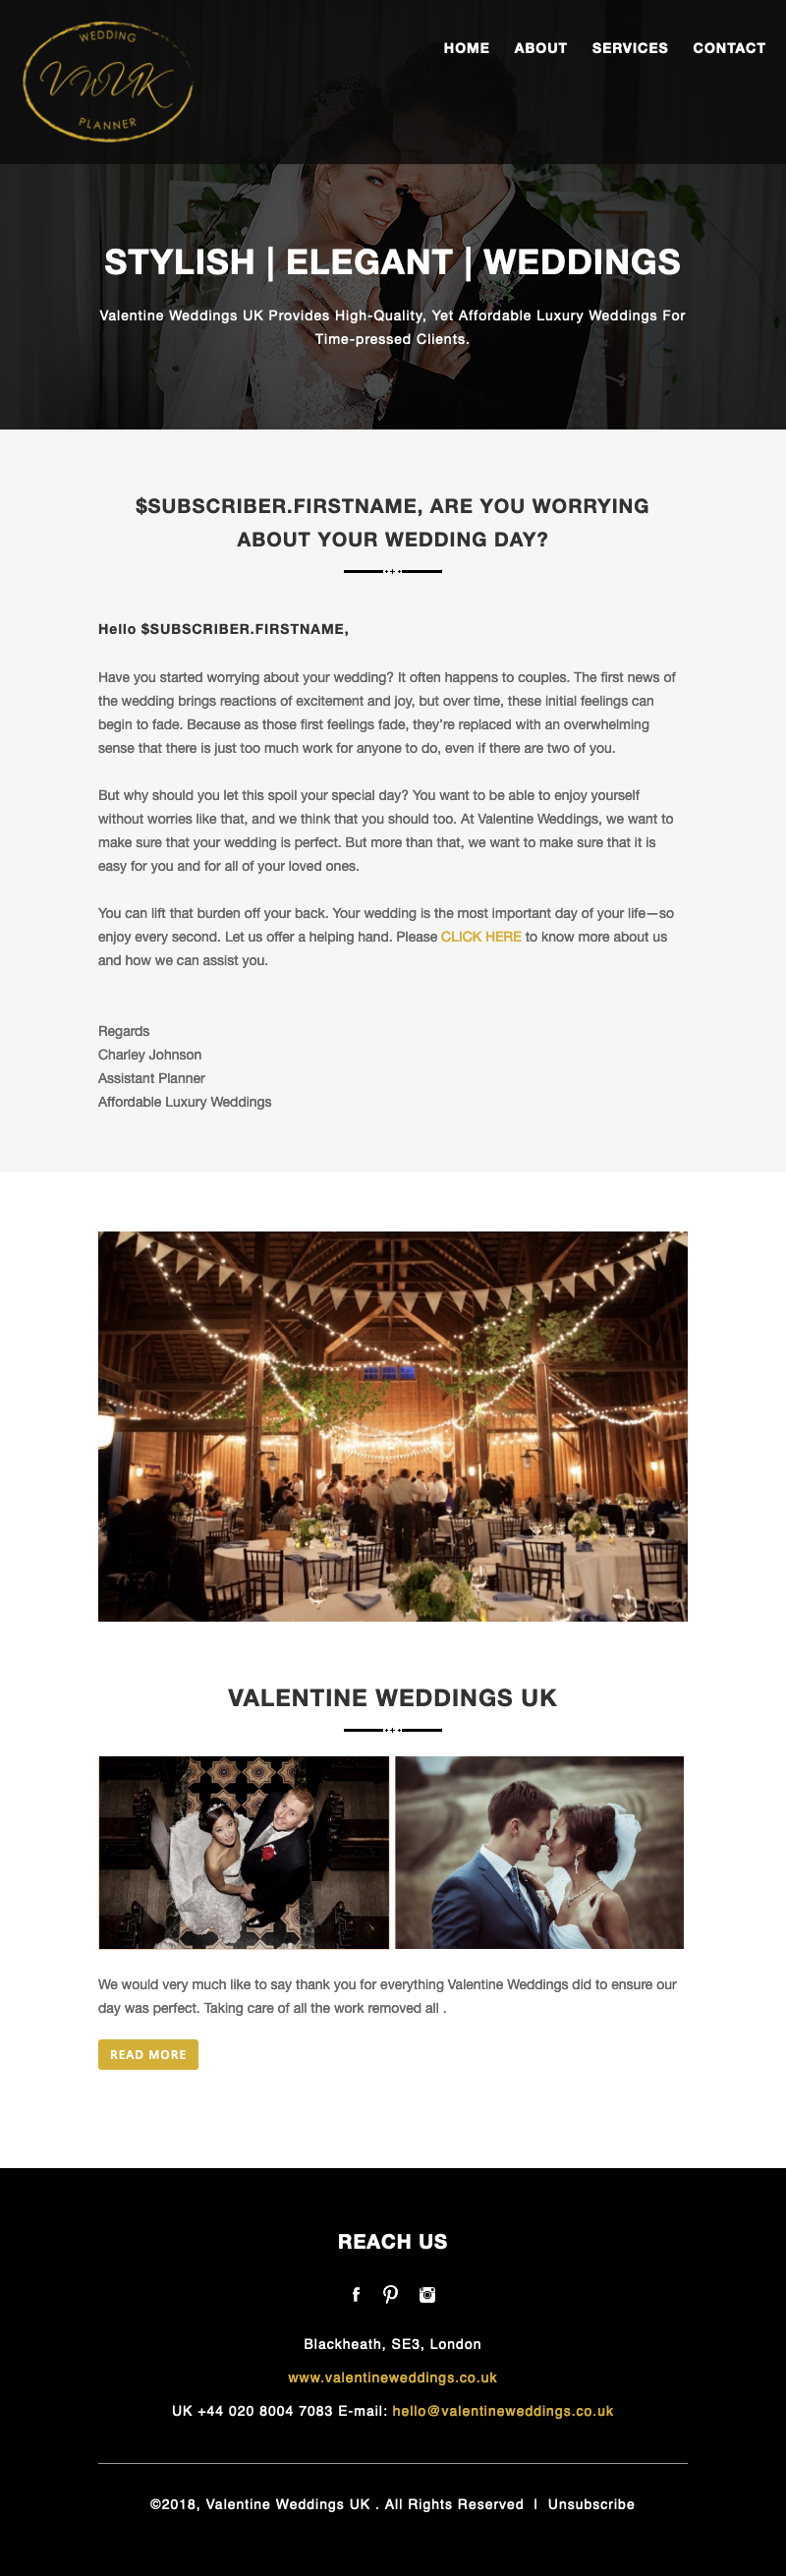 Valentine Wedding - Responsive Email Newsletter Design